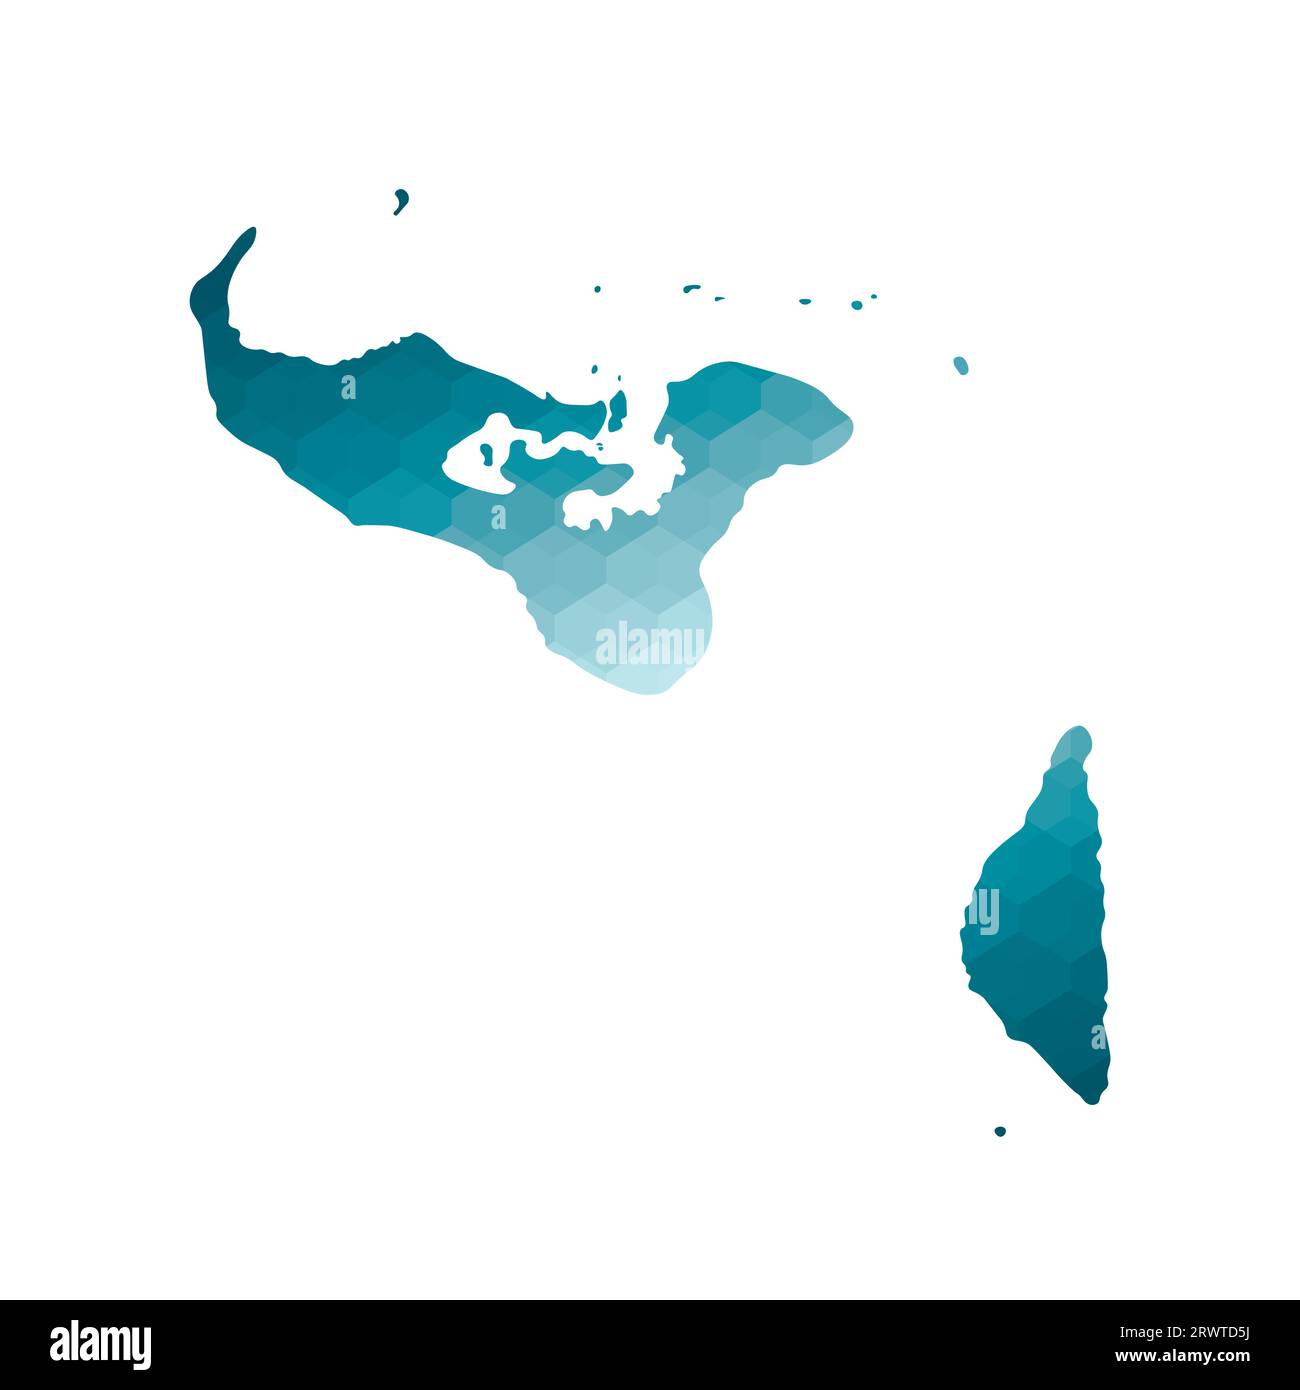 Vektor-isoliertes Illustrationssymbol mit vereinfachter blauer Silhouette der Tonga-Karte. Polygonaler geometrischer Stil. Weißer Hintergrund. Stock Vektor